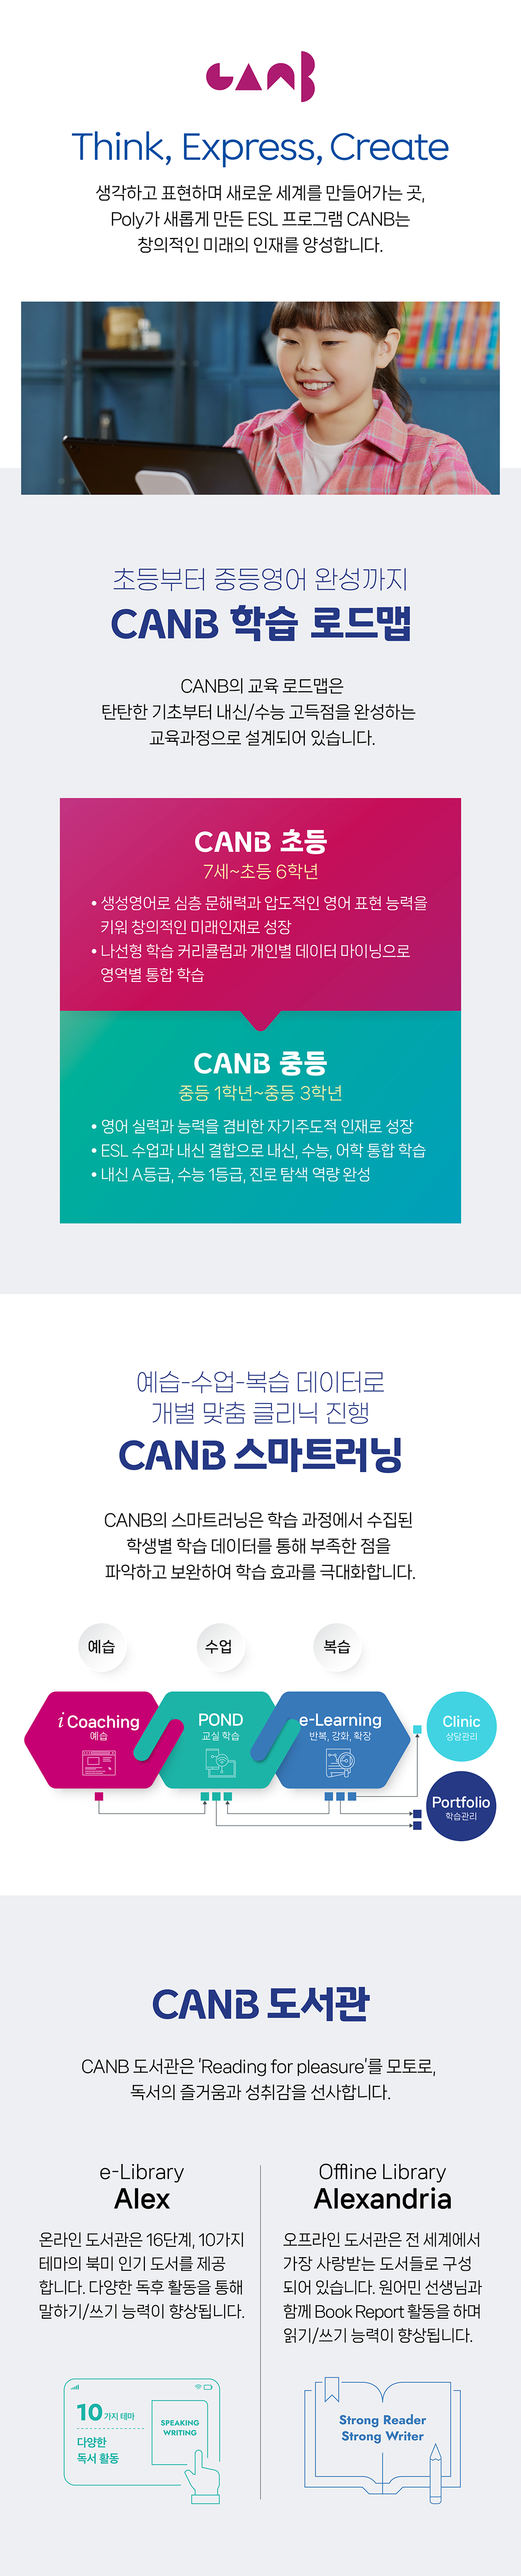 학원사업_CANB_수정.png